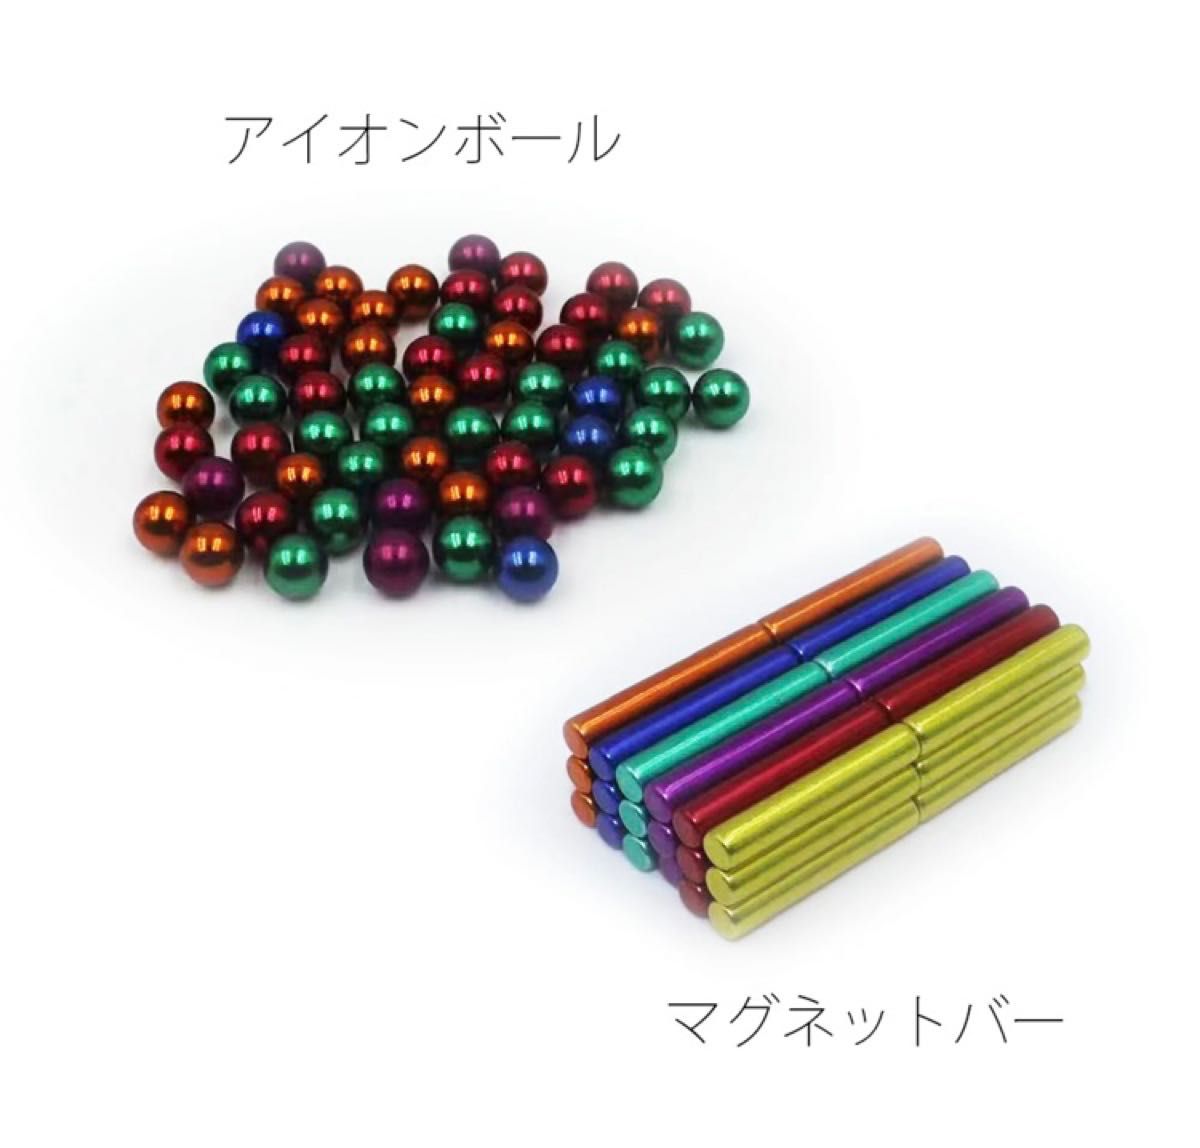 磁気棒 立体パズル 3D マグネットパズル 磁石パズル 磁気スティック プラモデル マグネットバー アイアンボール 8mm 磁石